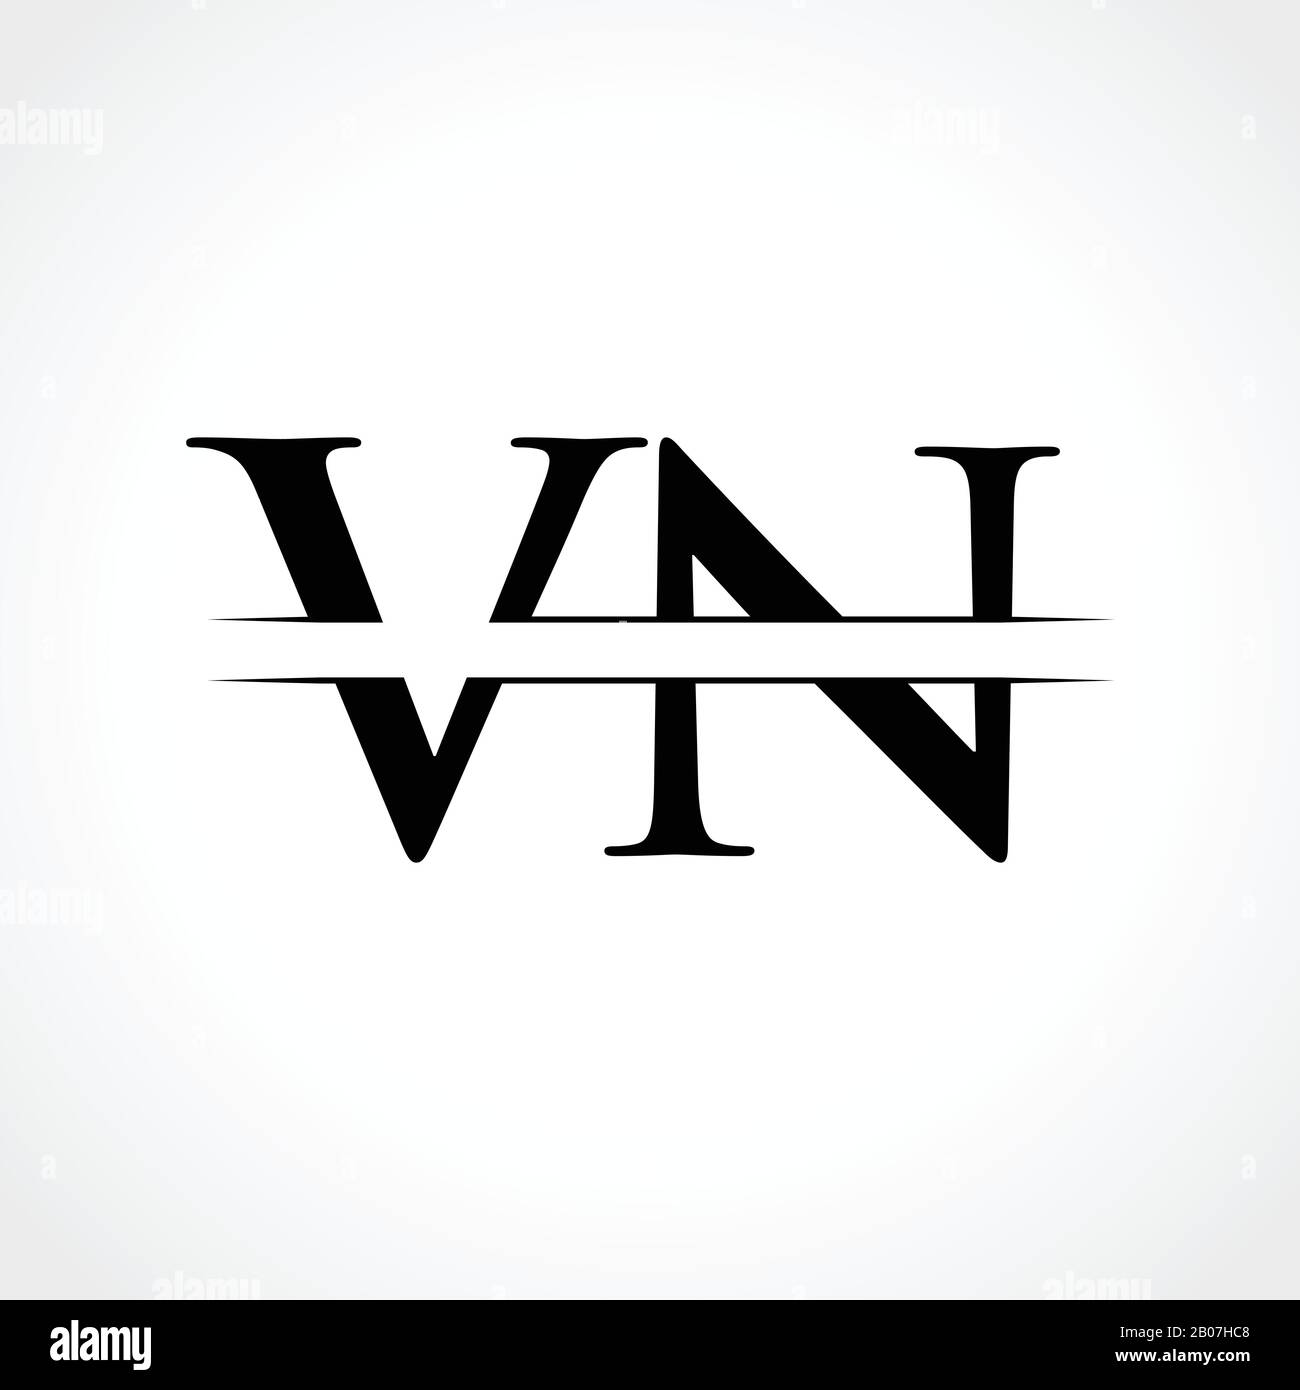 aggregate-77-vn-logo-super-hot-ceg-edu-vn